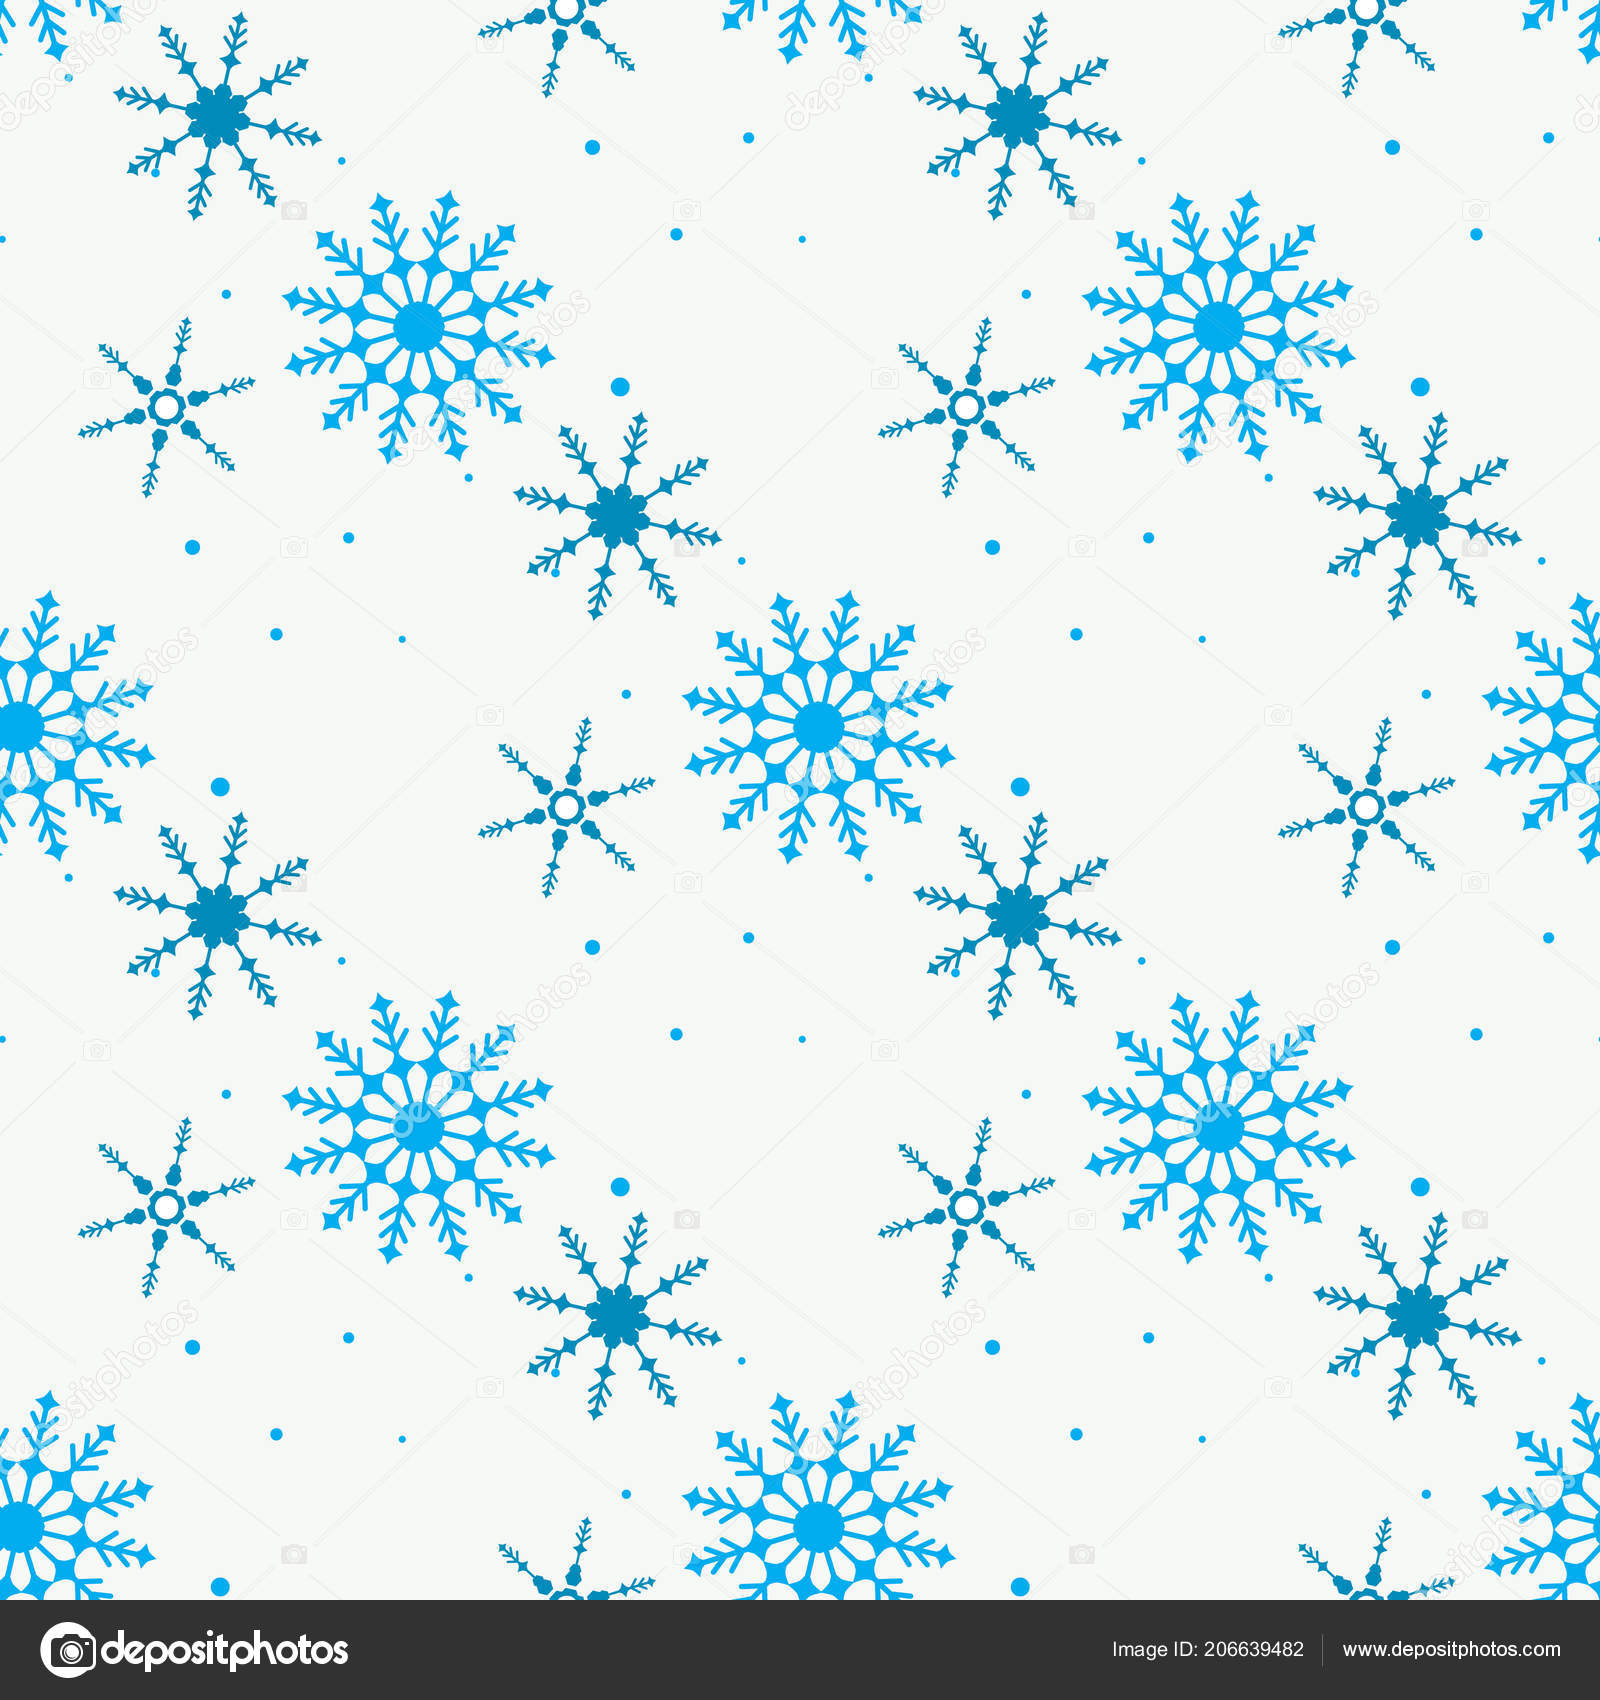 スノーフレーク単純なシームレス パターン 白い背景の青い雪は 抽象的な壁紙 装飾をラップします メリー クリスマス 新年あけましておめでとうございますお祝いベクトル図 Eps10 のシンボル ストックベクター C Elnourbabayev Gmail Com